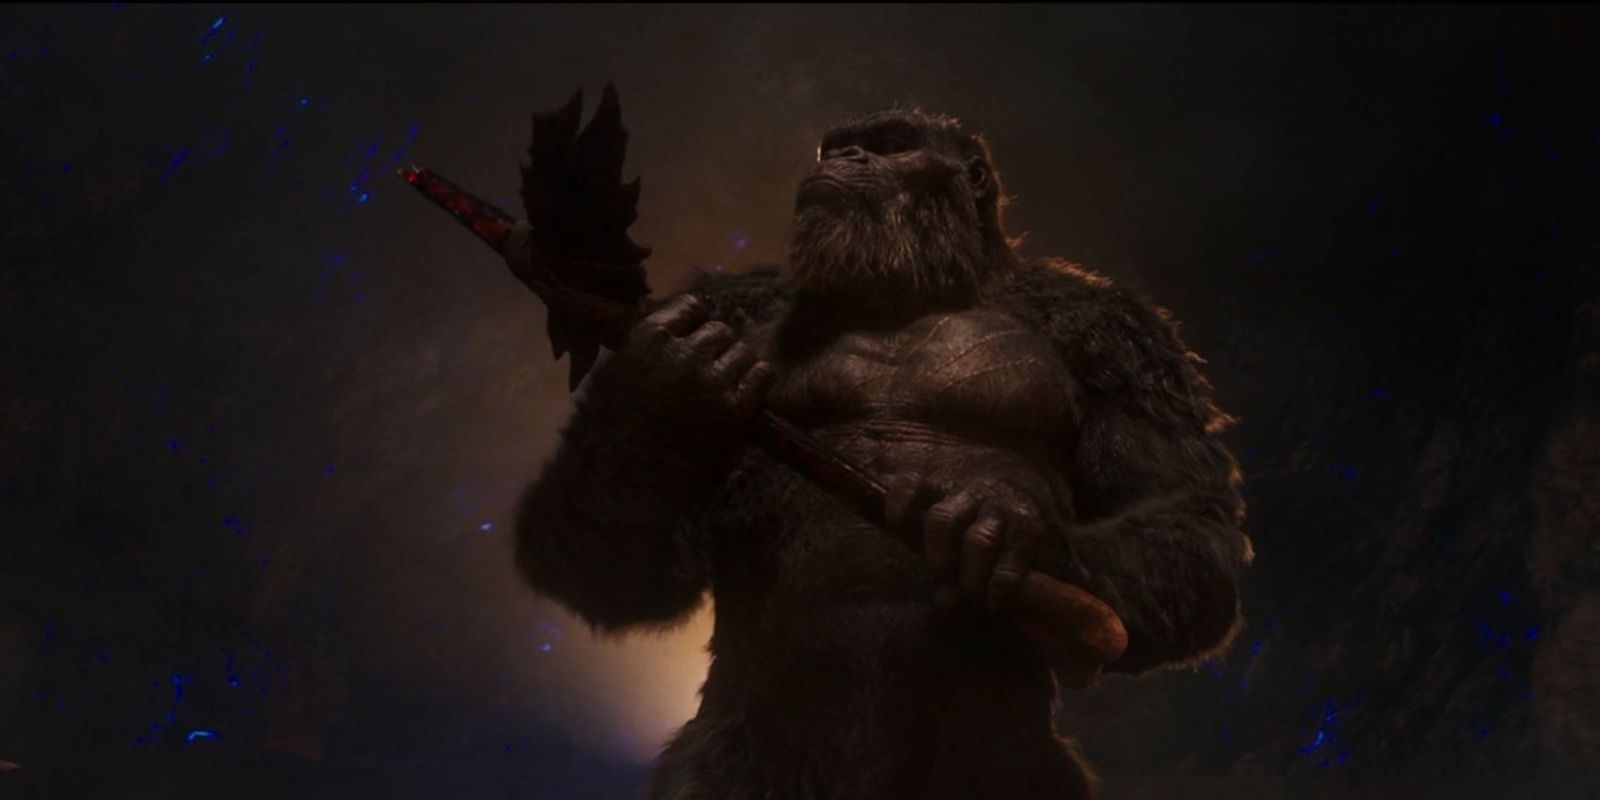 Kong holding the axe